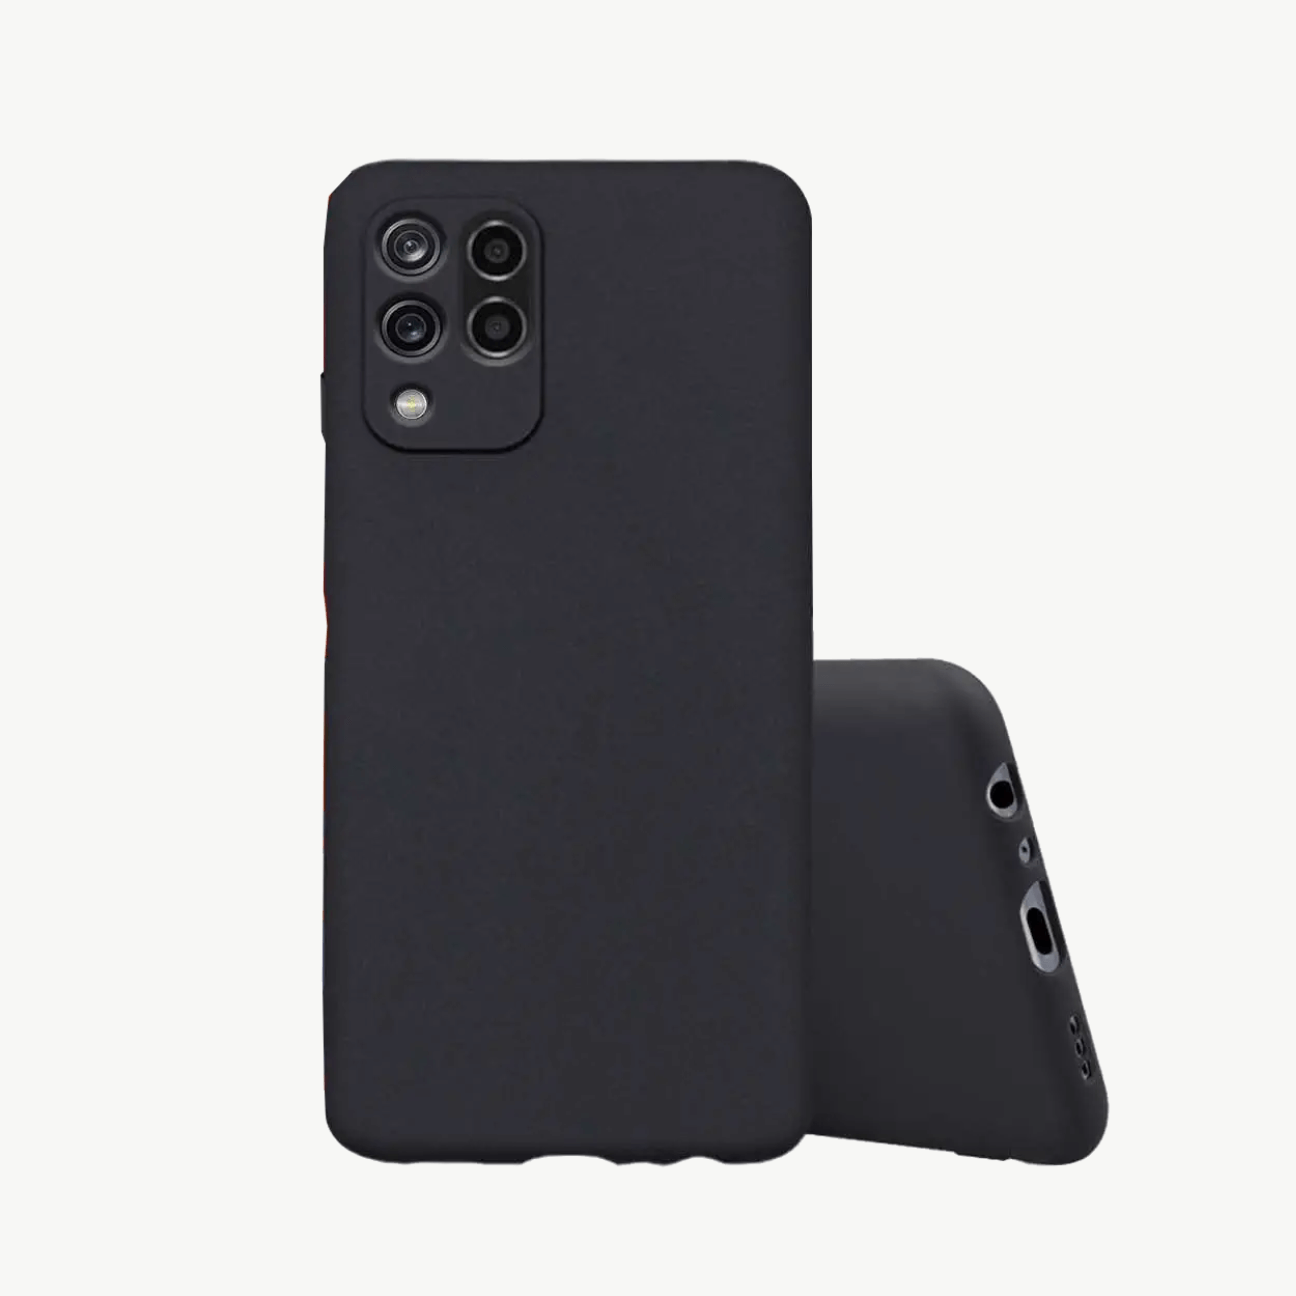 Realme Narzo 20 (2020) Black Soft Silicone Phone Case Image